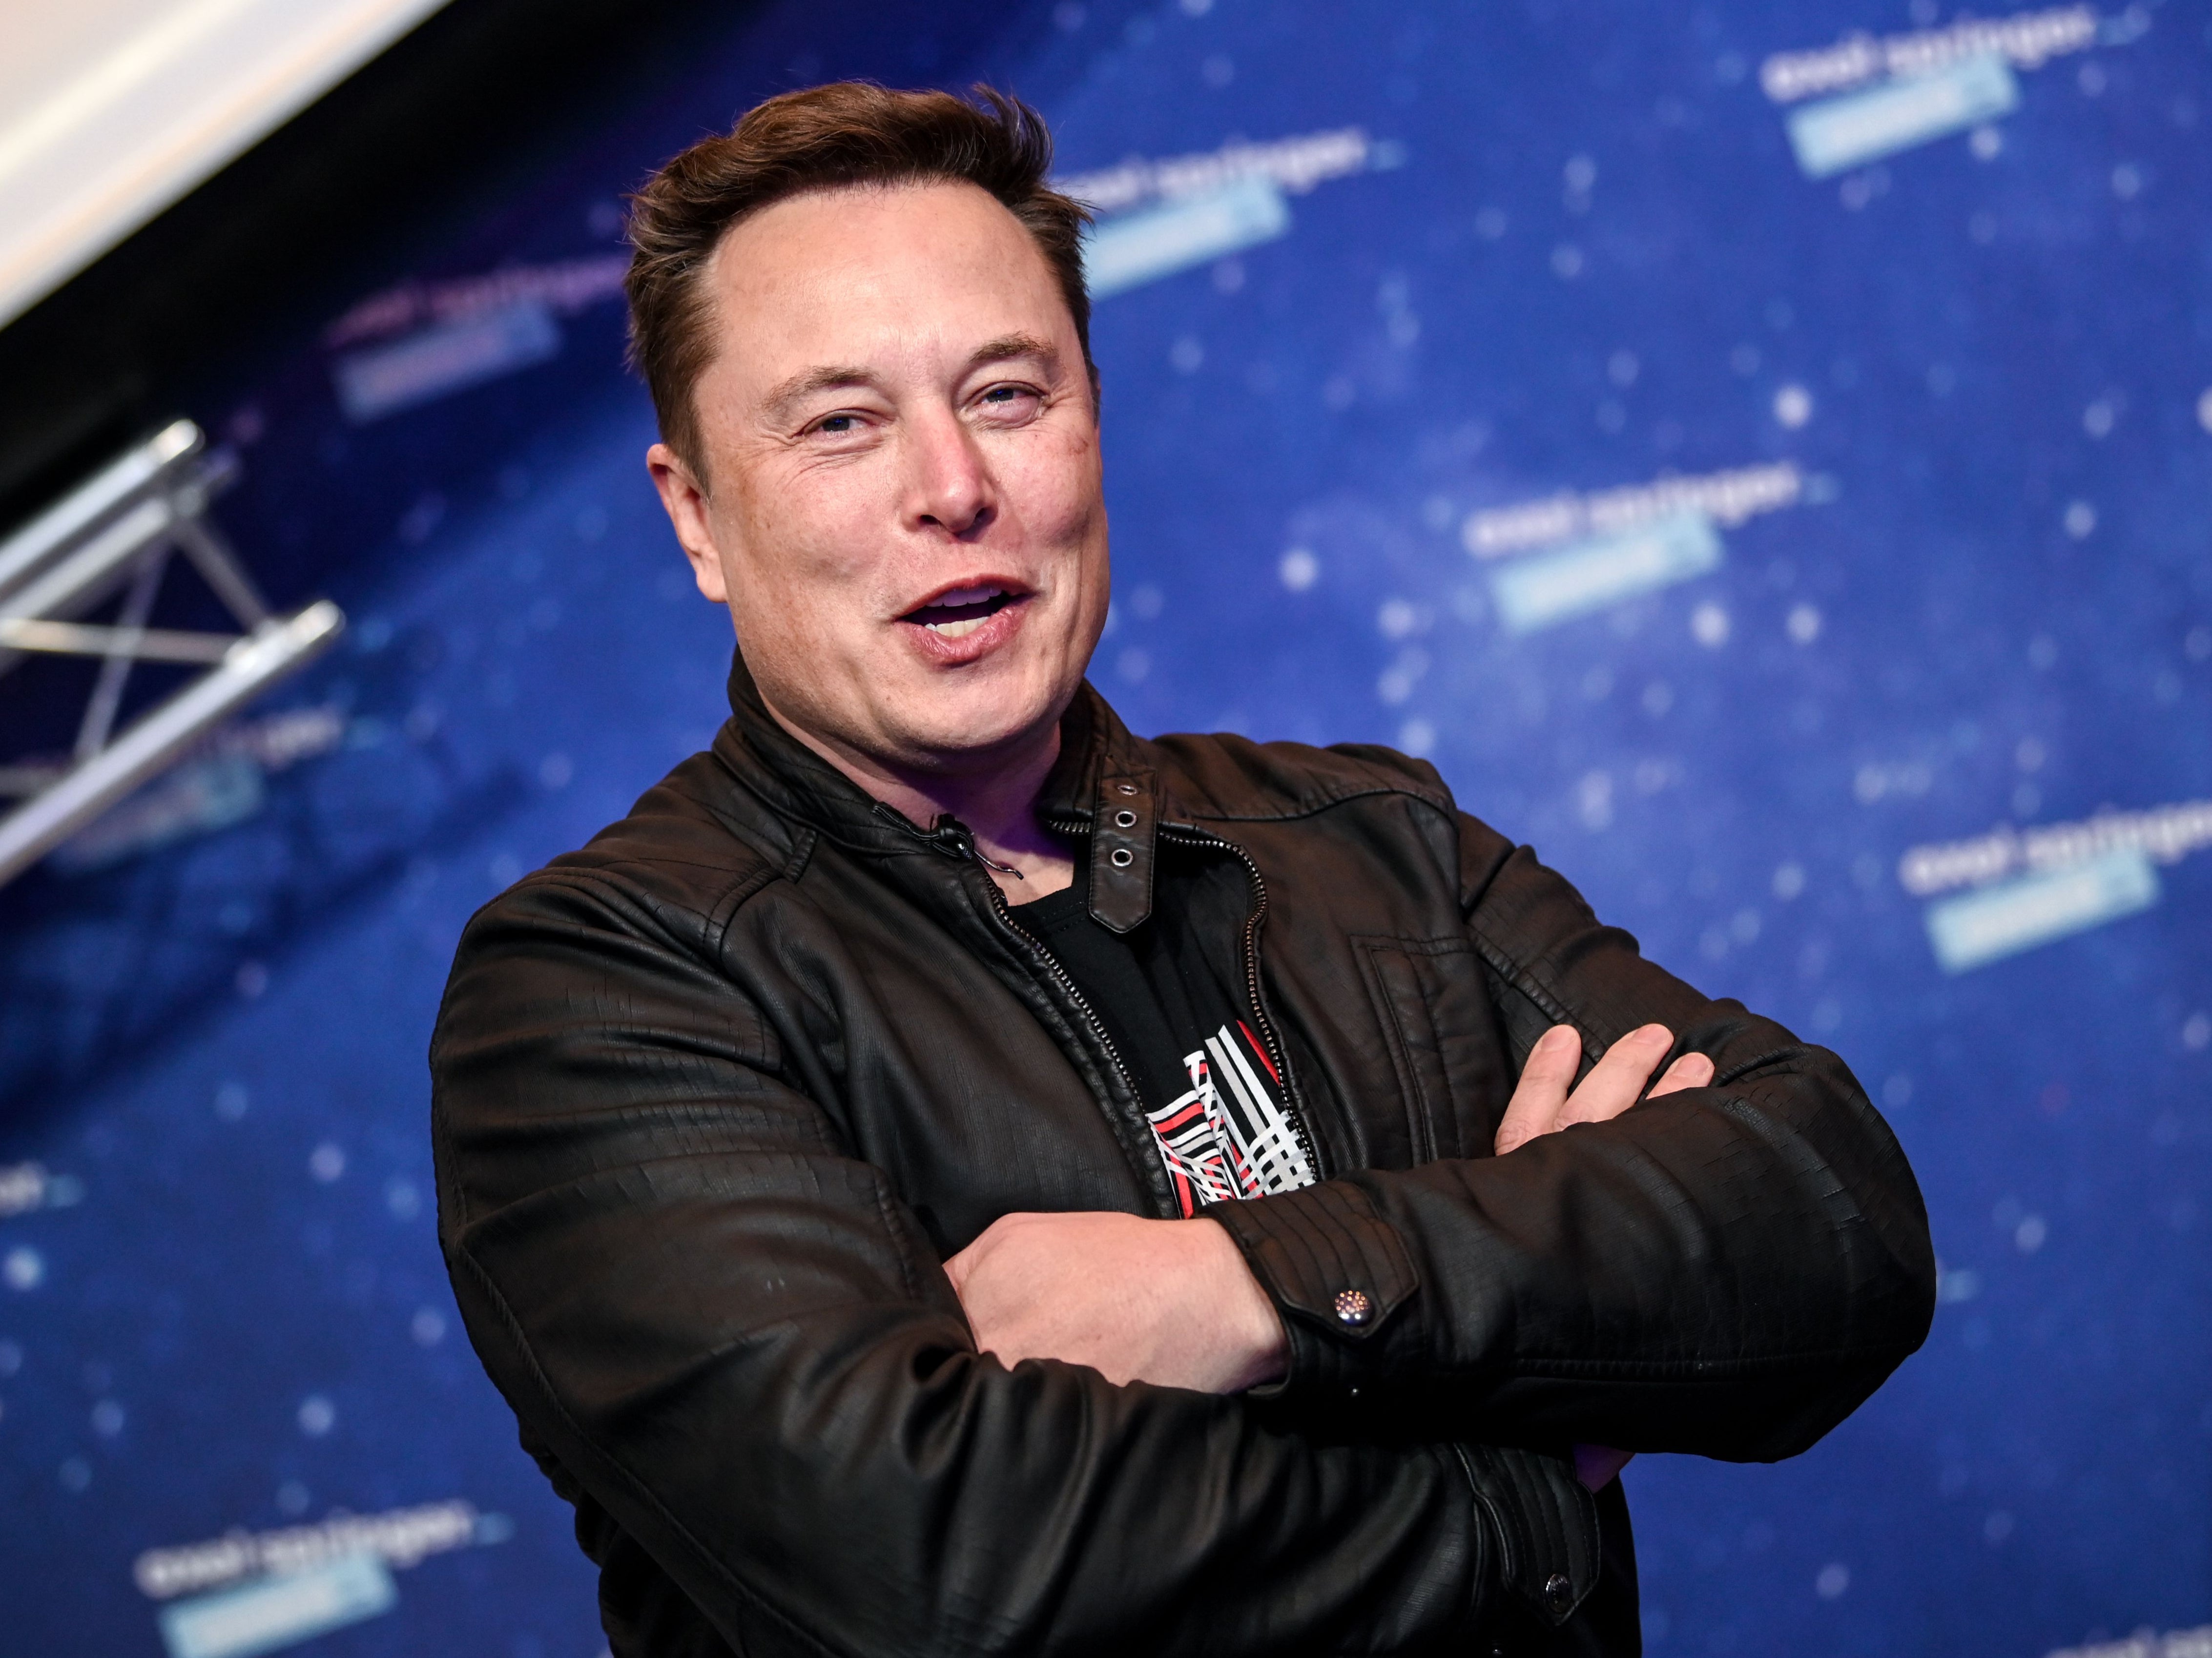 Where Dose Elon Musk Live - www.inf-inet.com